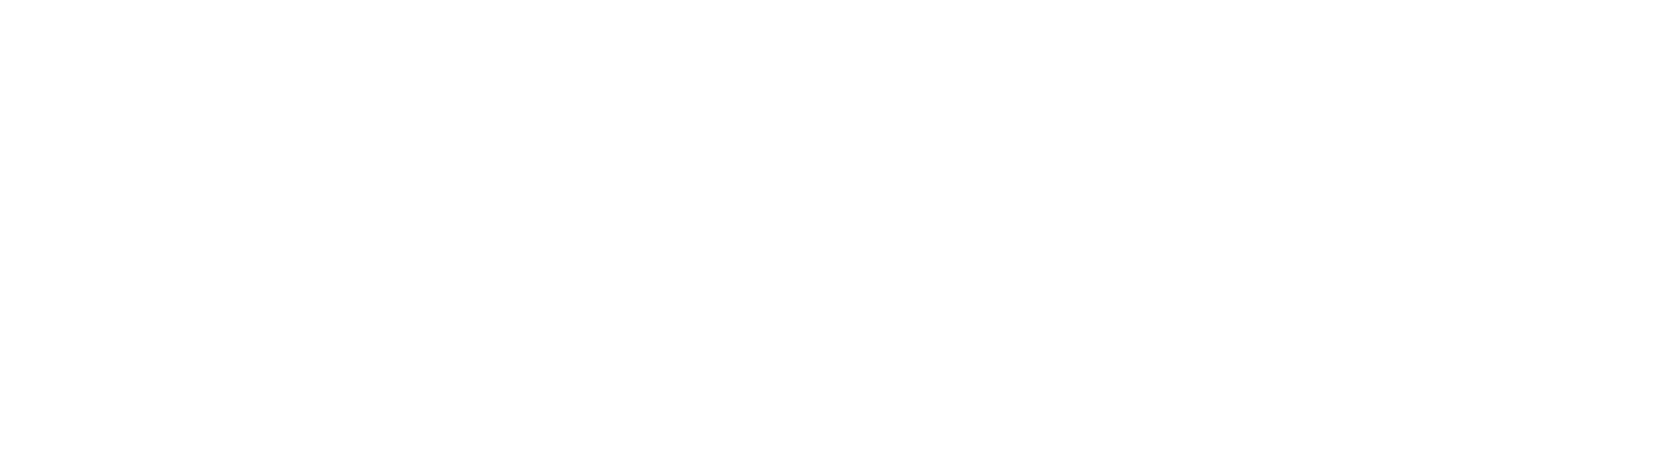 Associazione Classic Cars Ticino